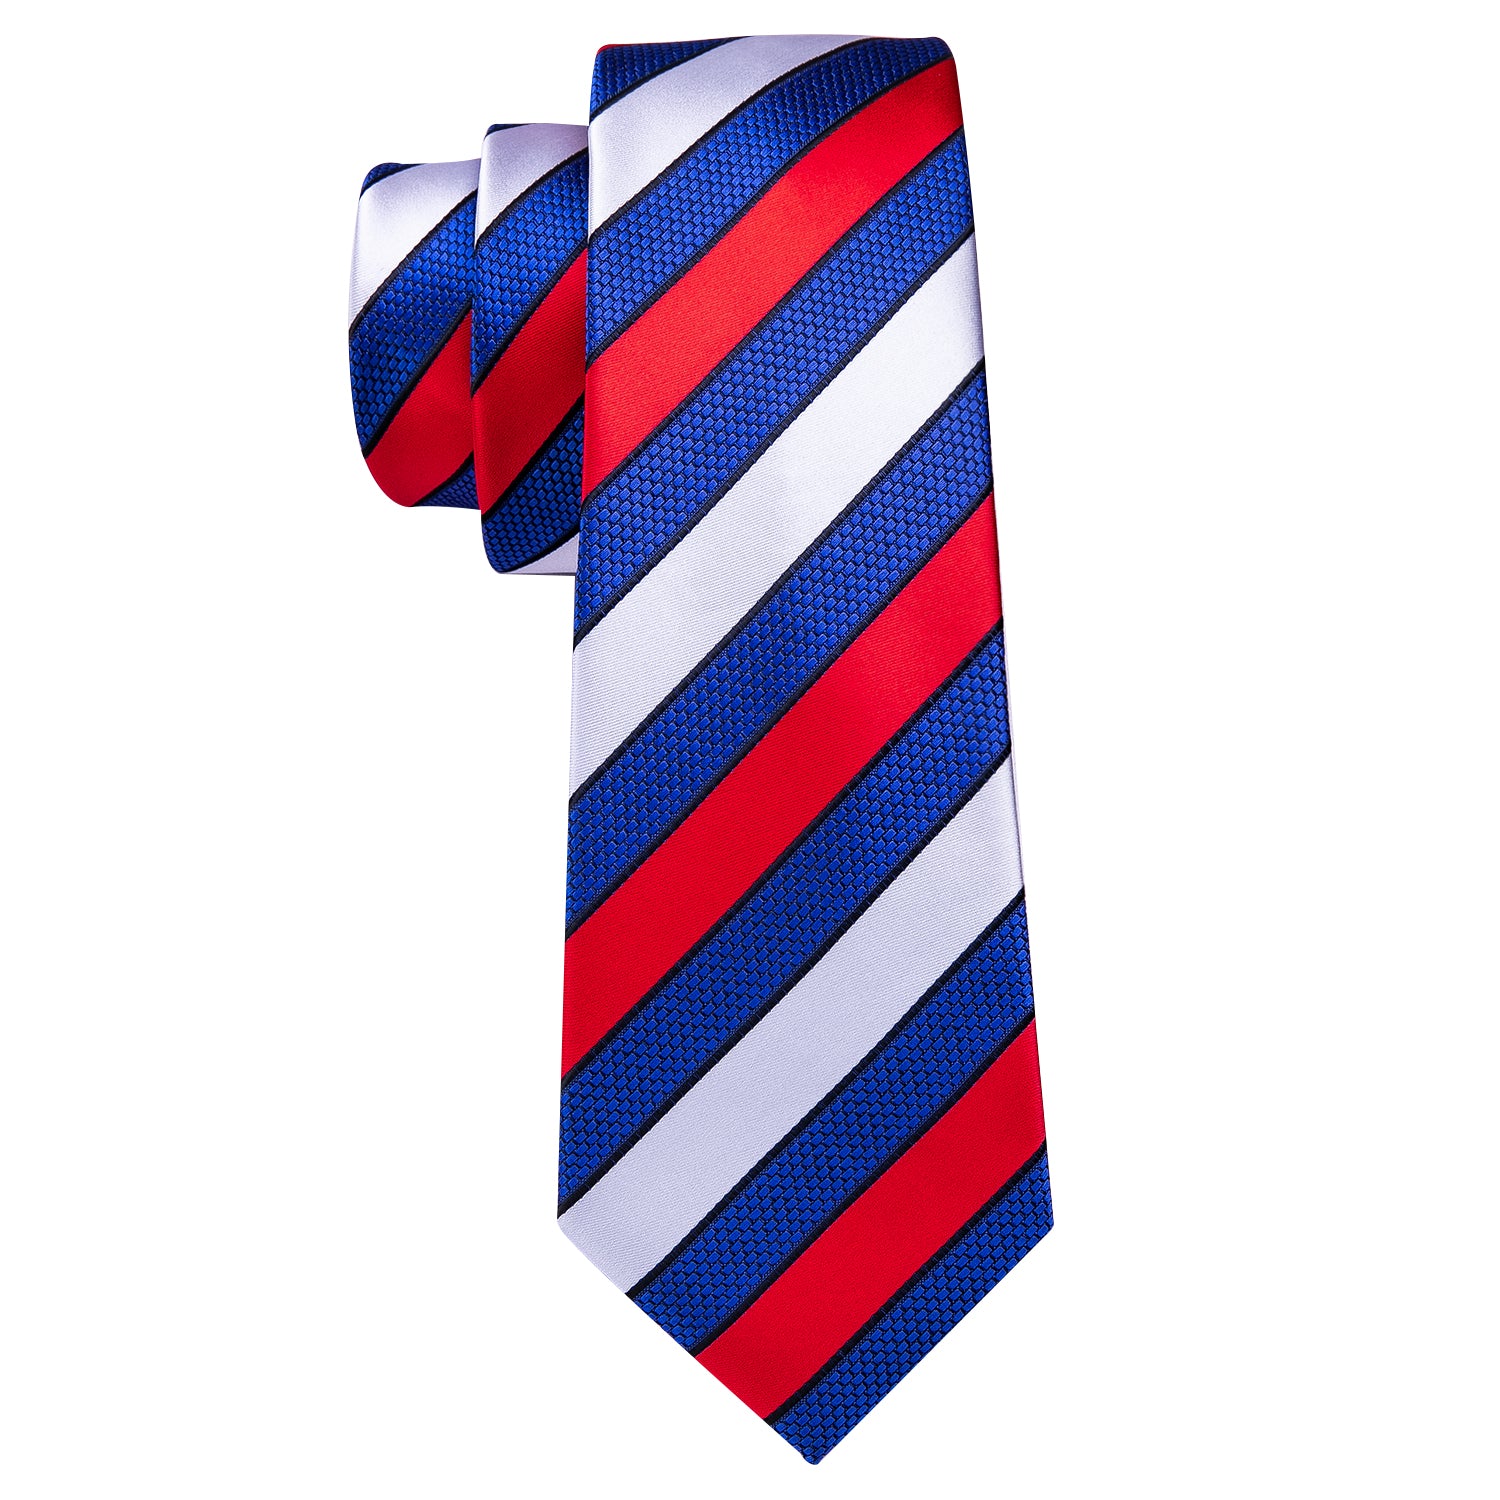 Barry.wang Men's Tie Red White Blue Striped Silk Tie Hanky Cufflinks Set New